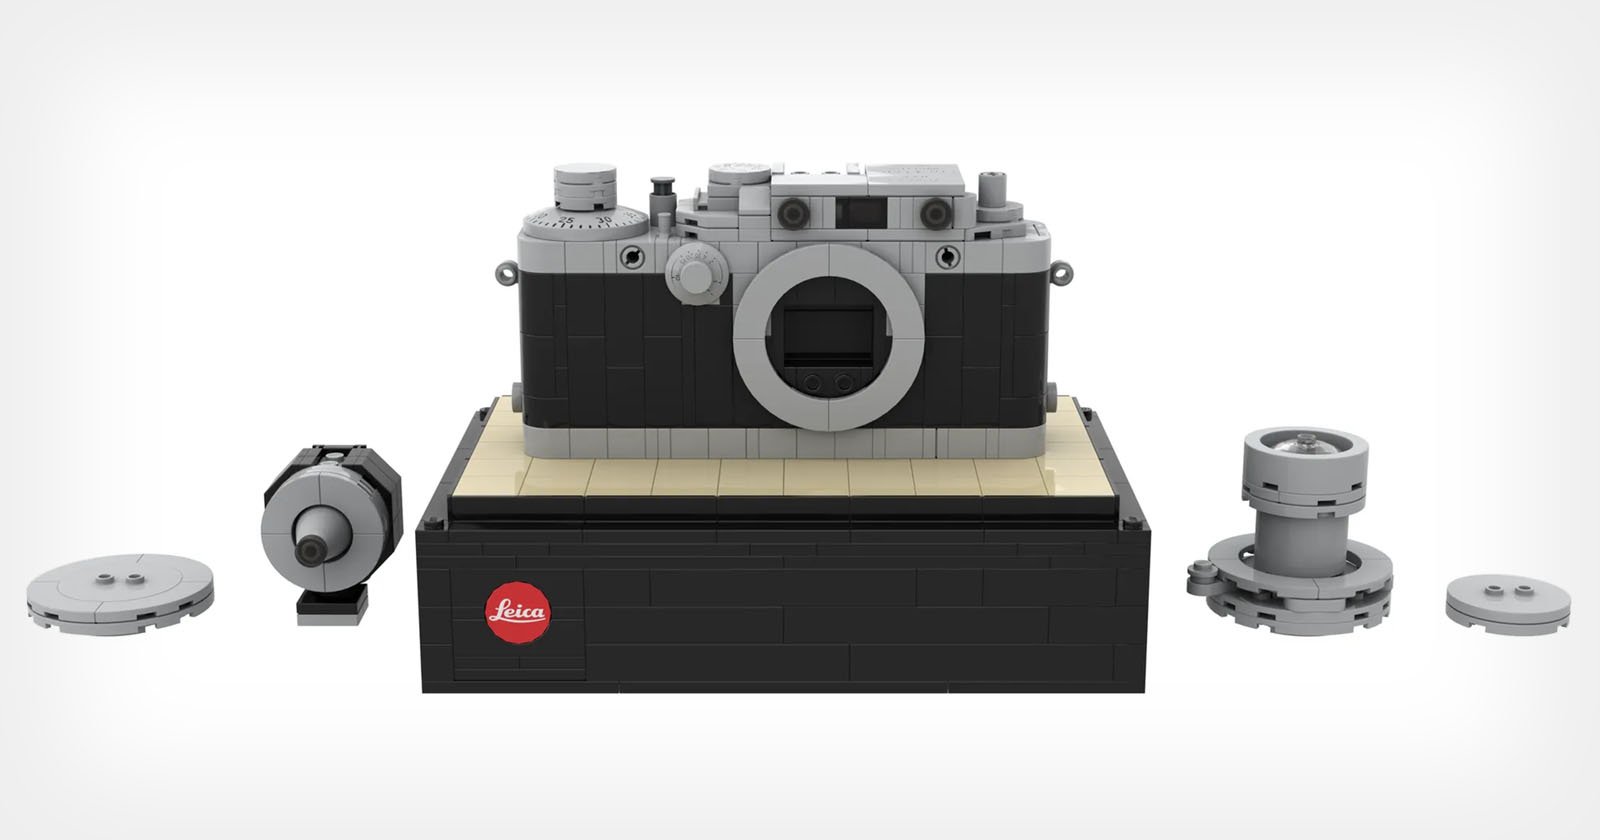 Kits de LEGO de Leica te permiten construir tu propia cámara de LEGO